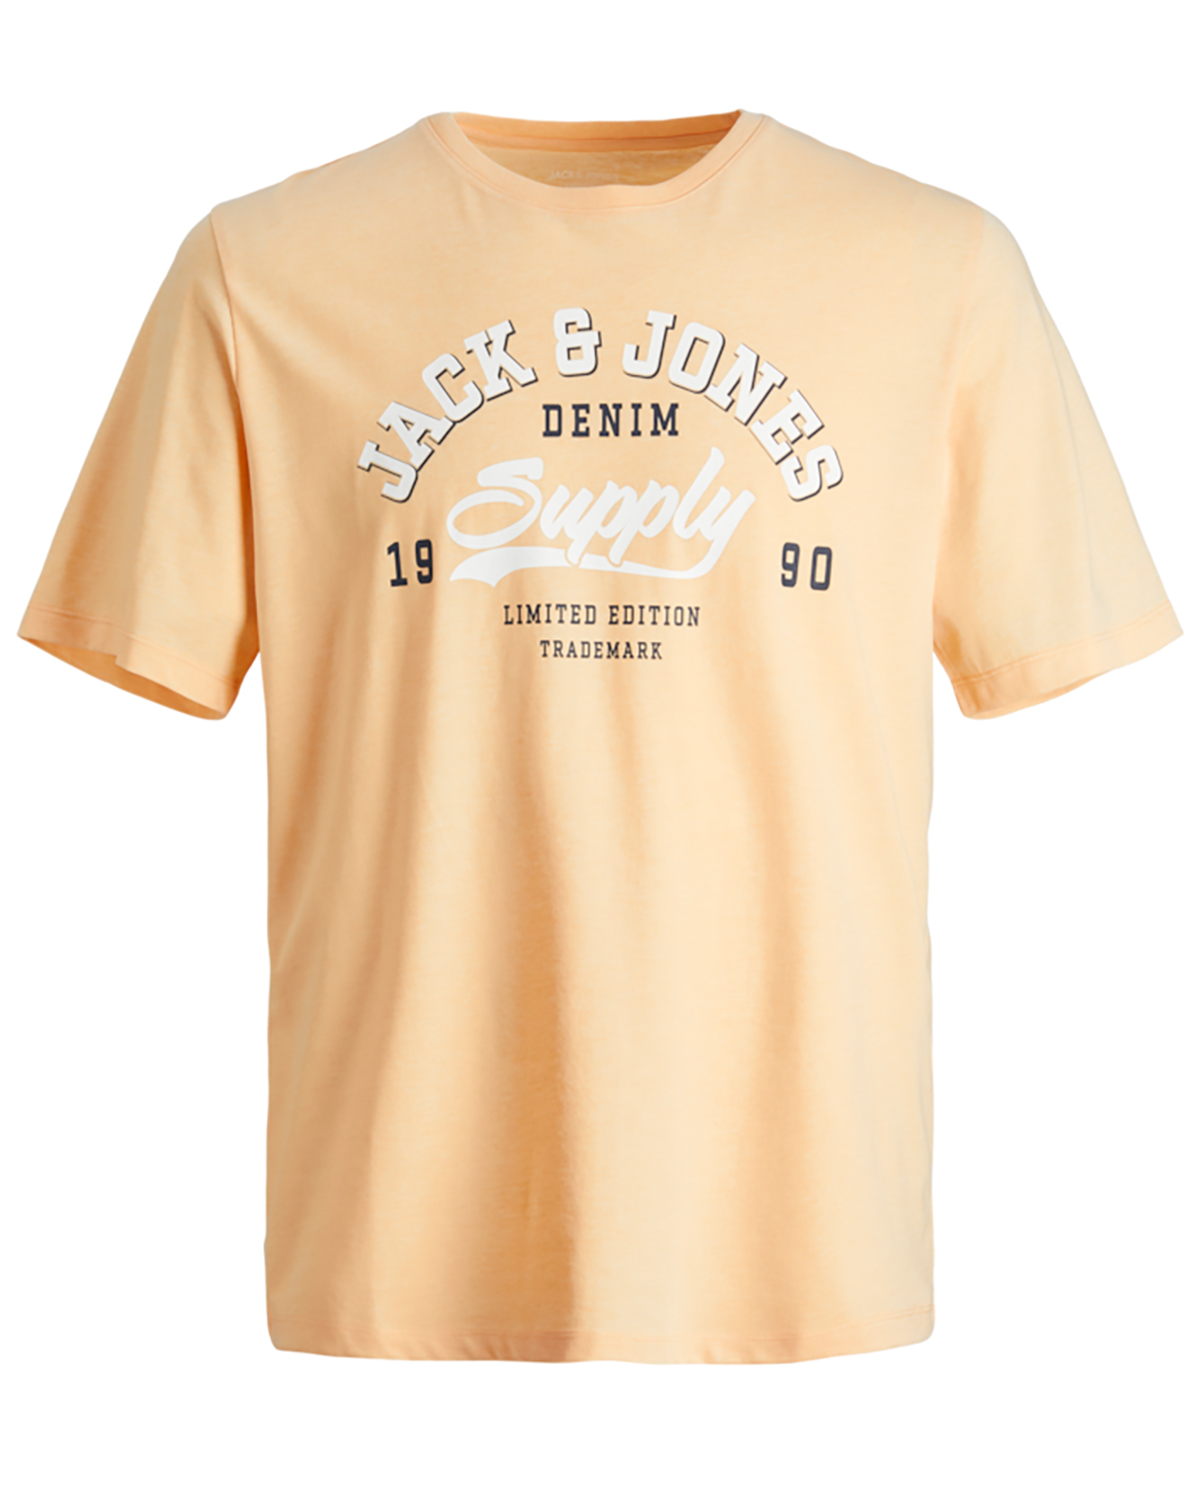 Se Jack & Jones JR t-shirt s/s, Logo tee, sand - 140,10år hos Umame.dk